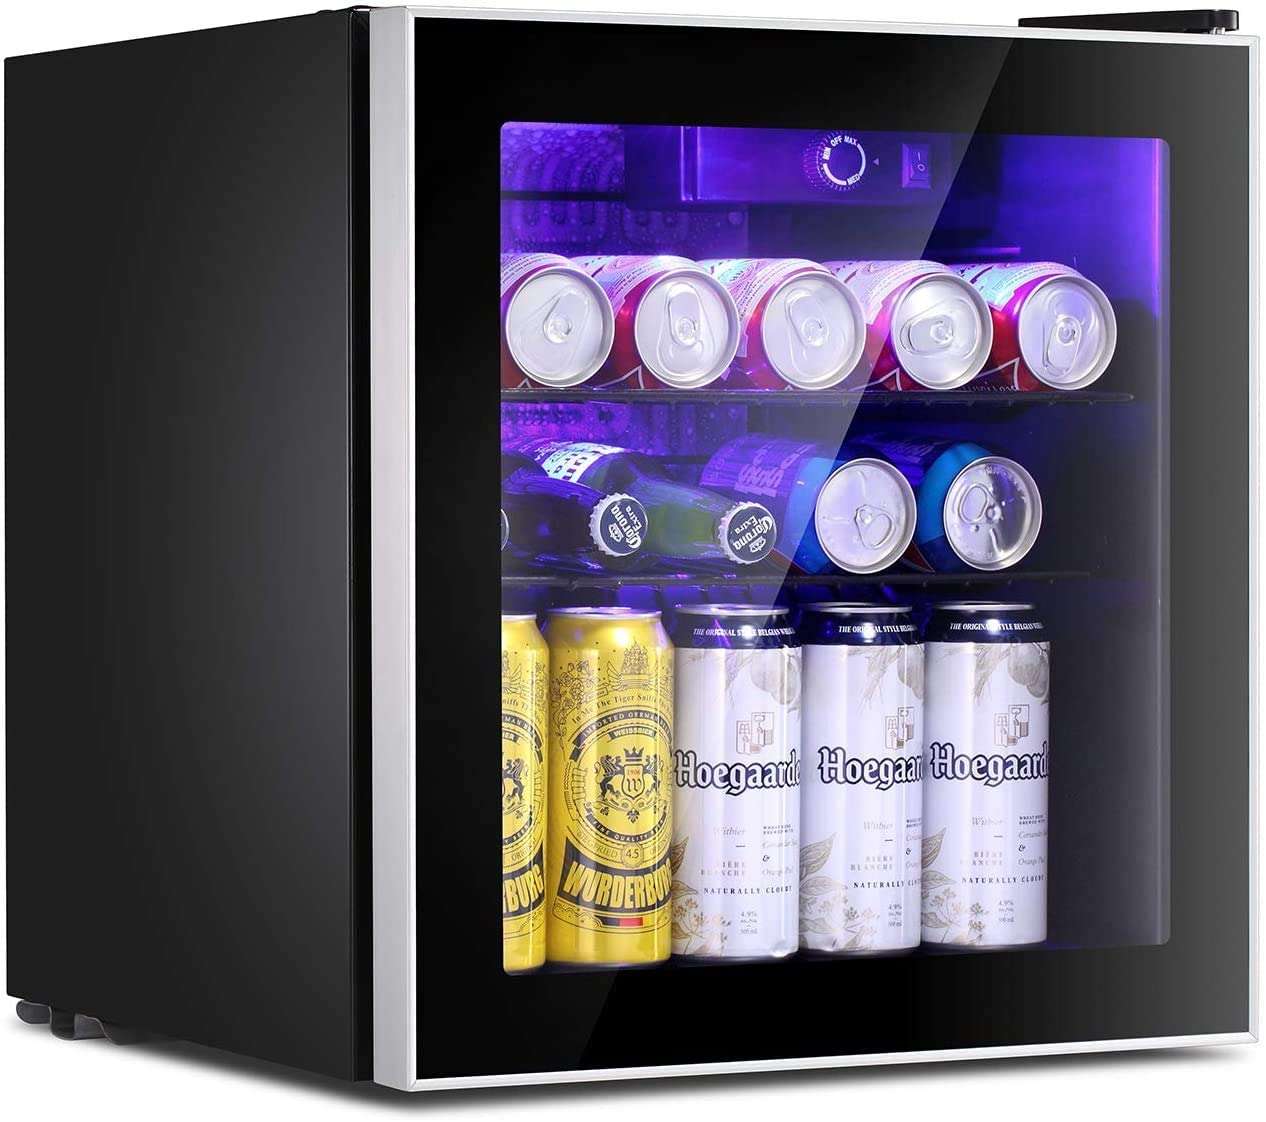 antarctic star mini fridge cooler drinks inside isolated on white background